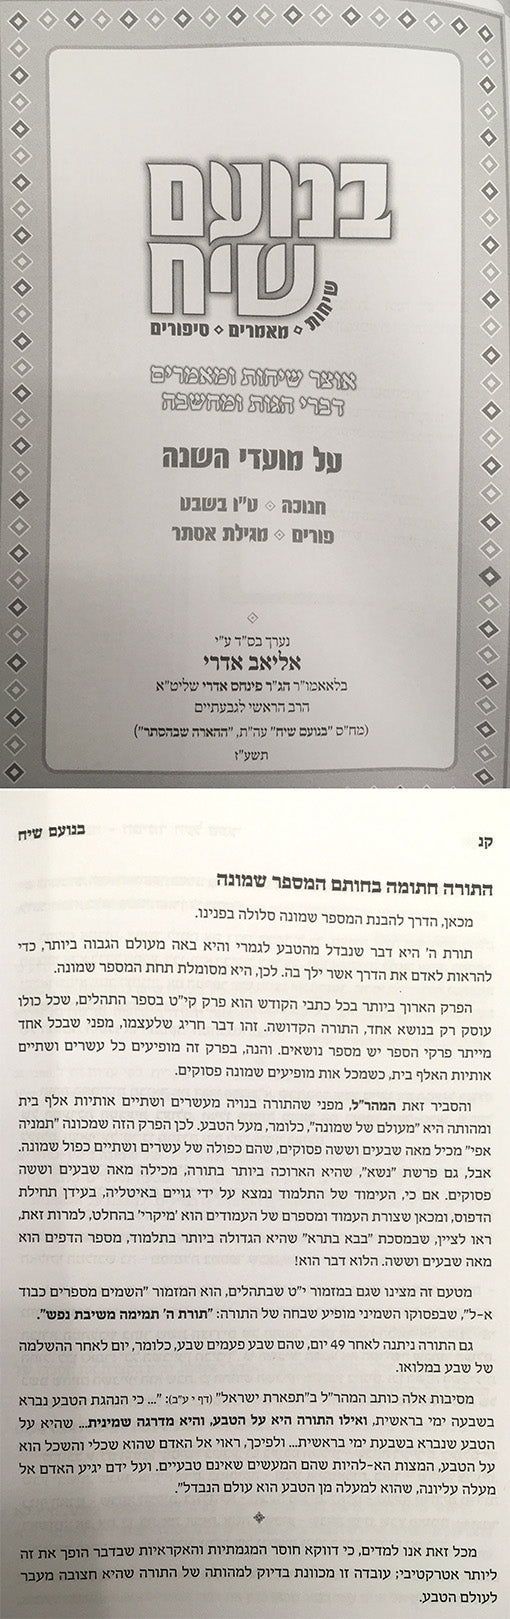 BeNoam Siach - Chanukah / Purim